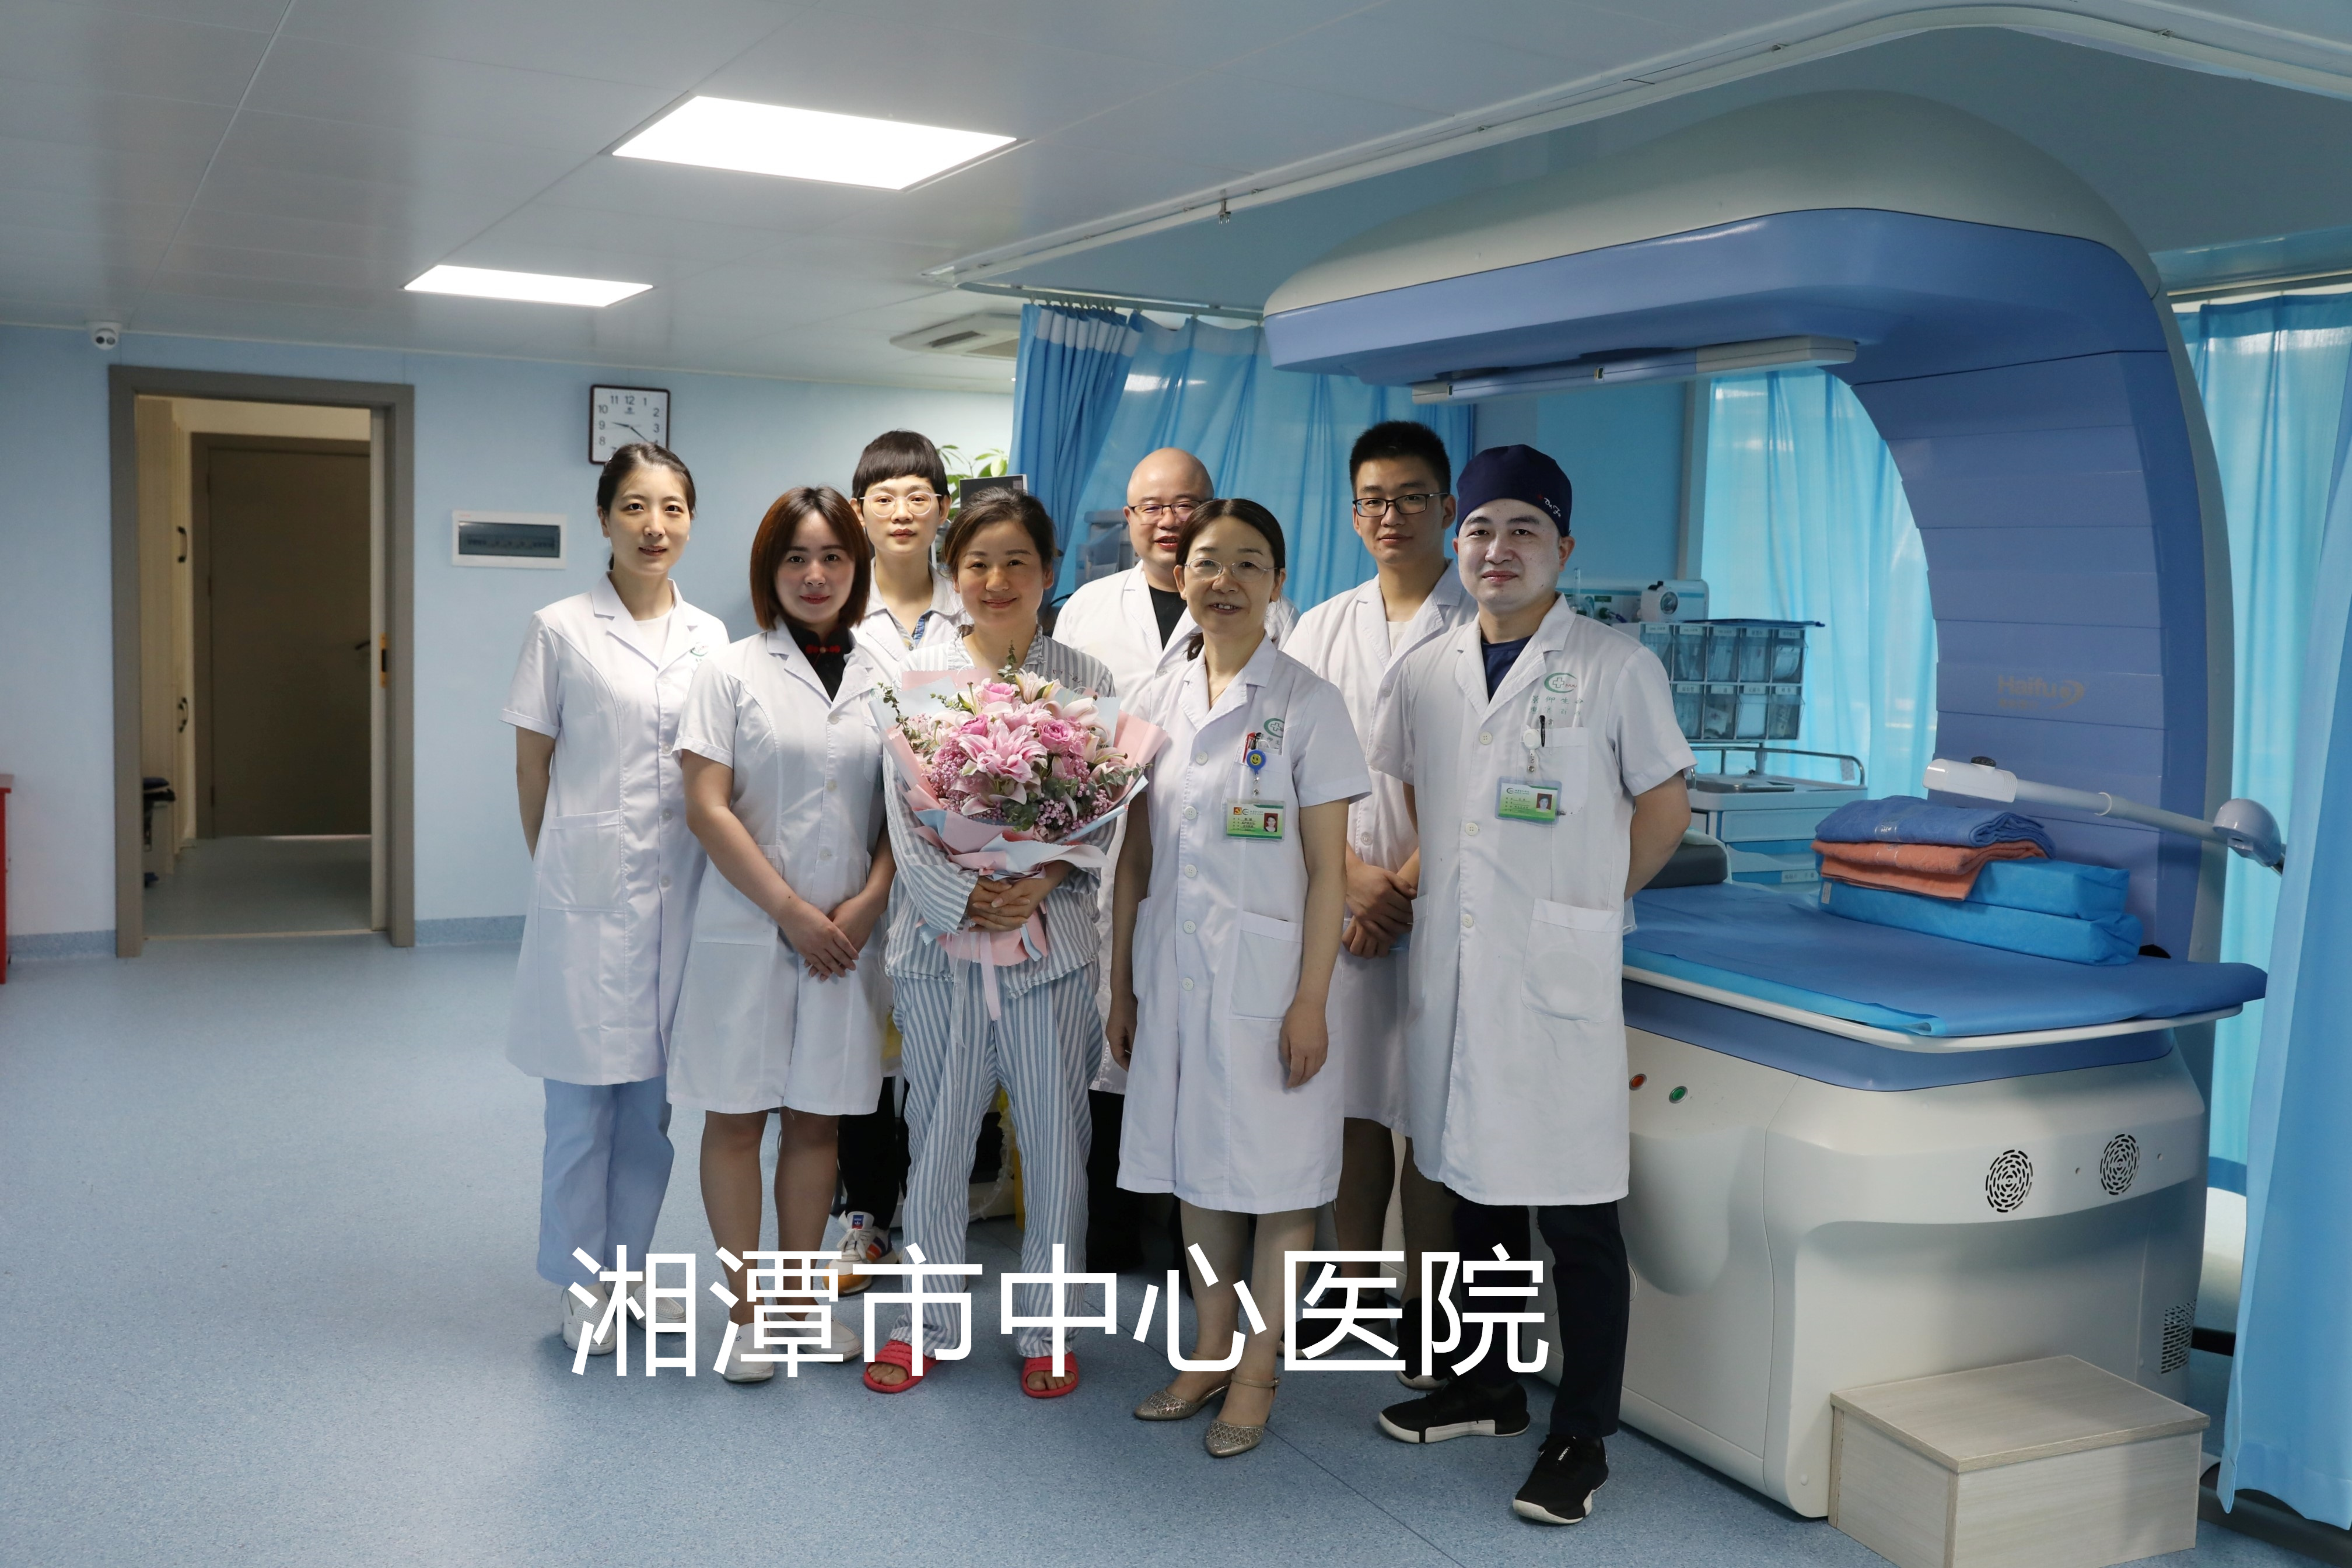 湘潭市中心医院海扶®微无创治疗中心成功治疗100例患者